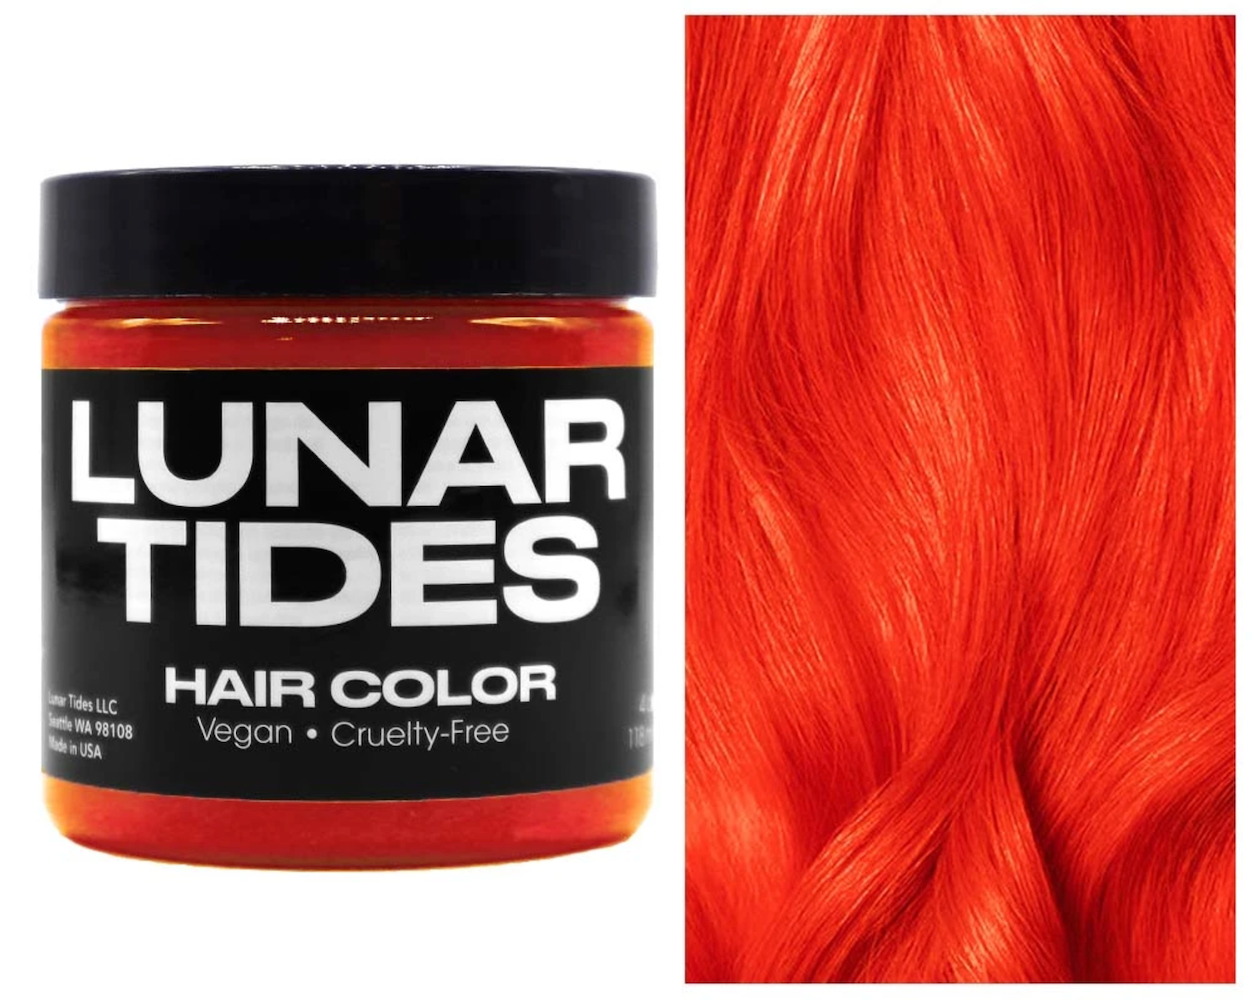 Lunar Tides Hair Dye - Siam Orange